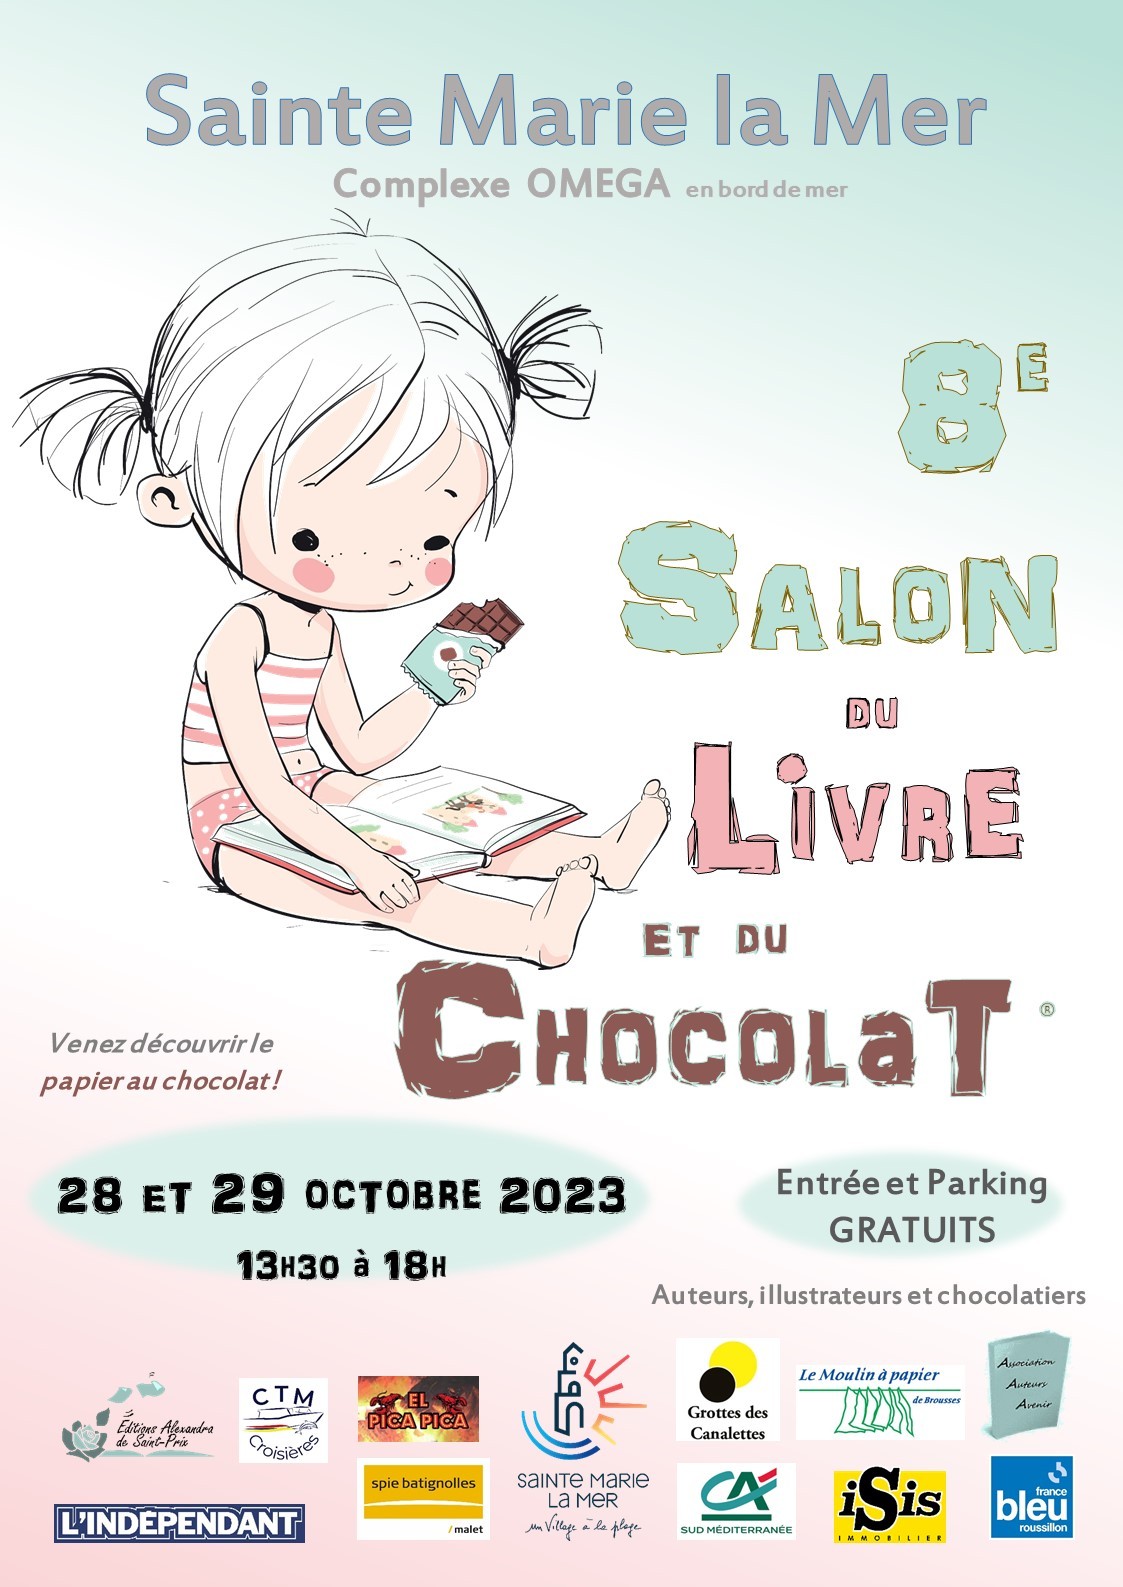 Affiche_A3_Officielle_-_8e_Salon_du_livre_et_du_chocolat_-_Sainte_Marie_la_Mer_-_28__29_oct_2023